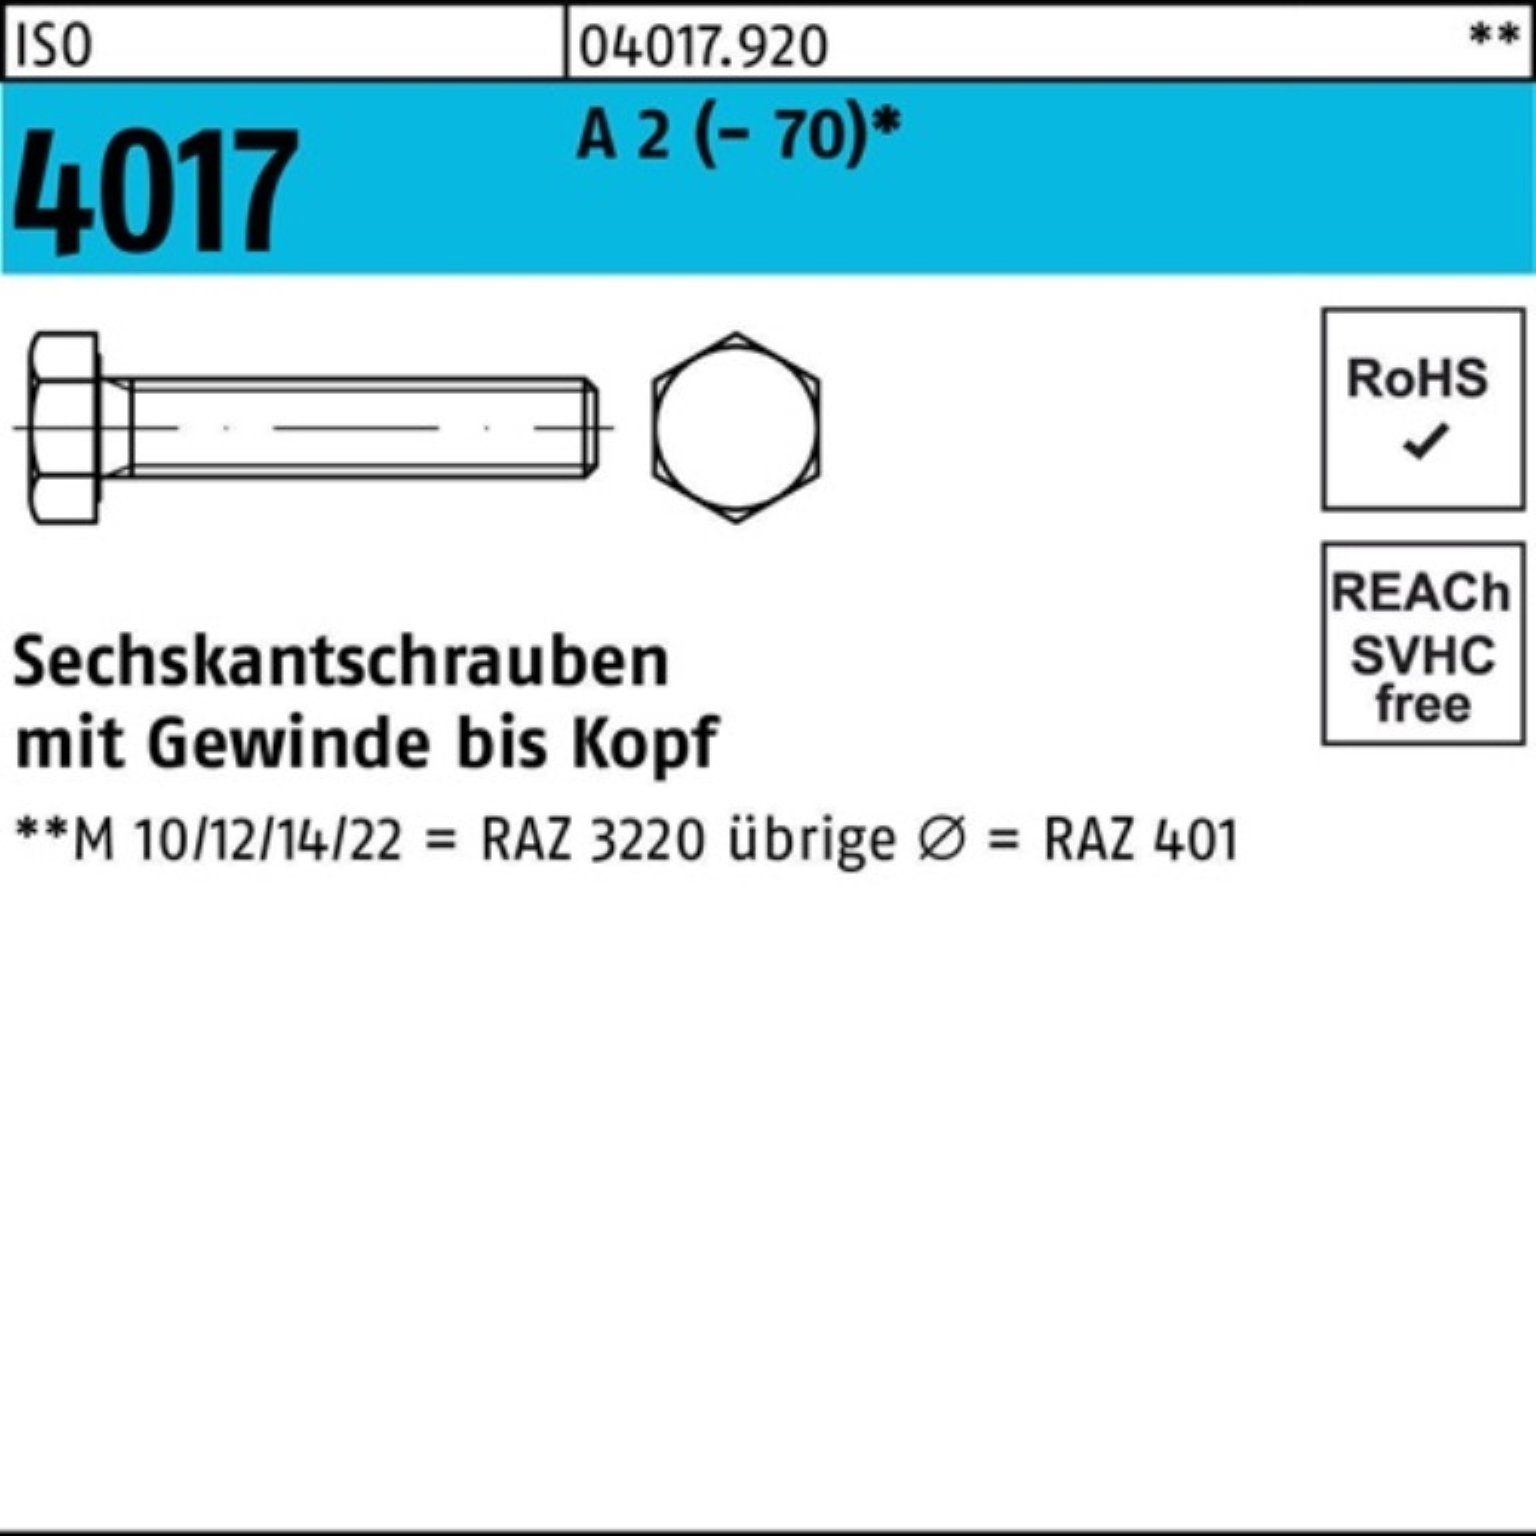 Bufab Sechskantschraube 100er Pack Sechskantschraube ISO 4017 VG M6x 6 A 2 (70) 100 Stück I